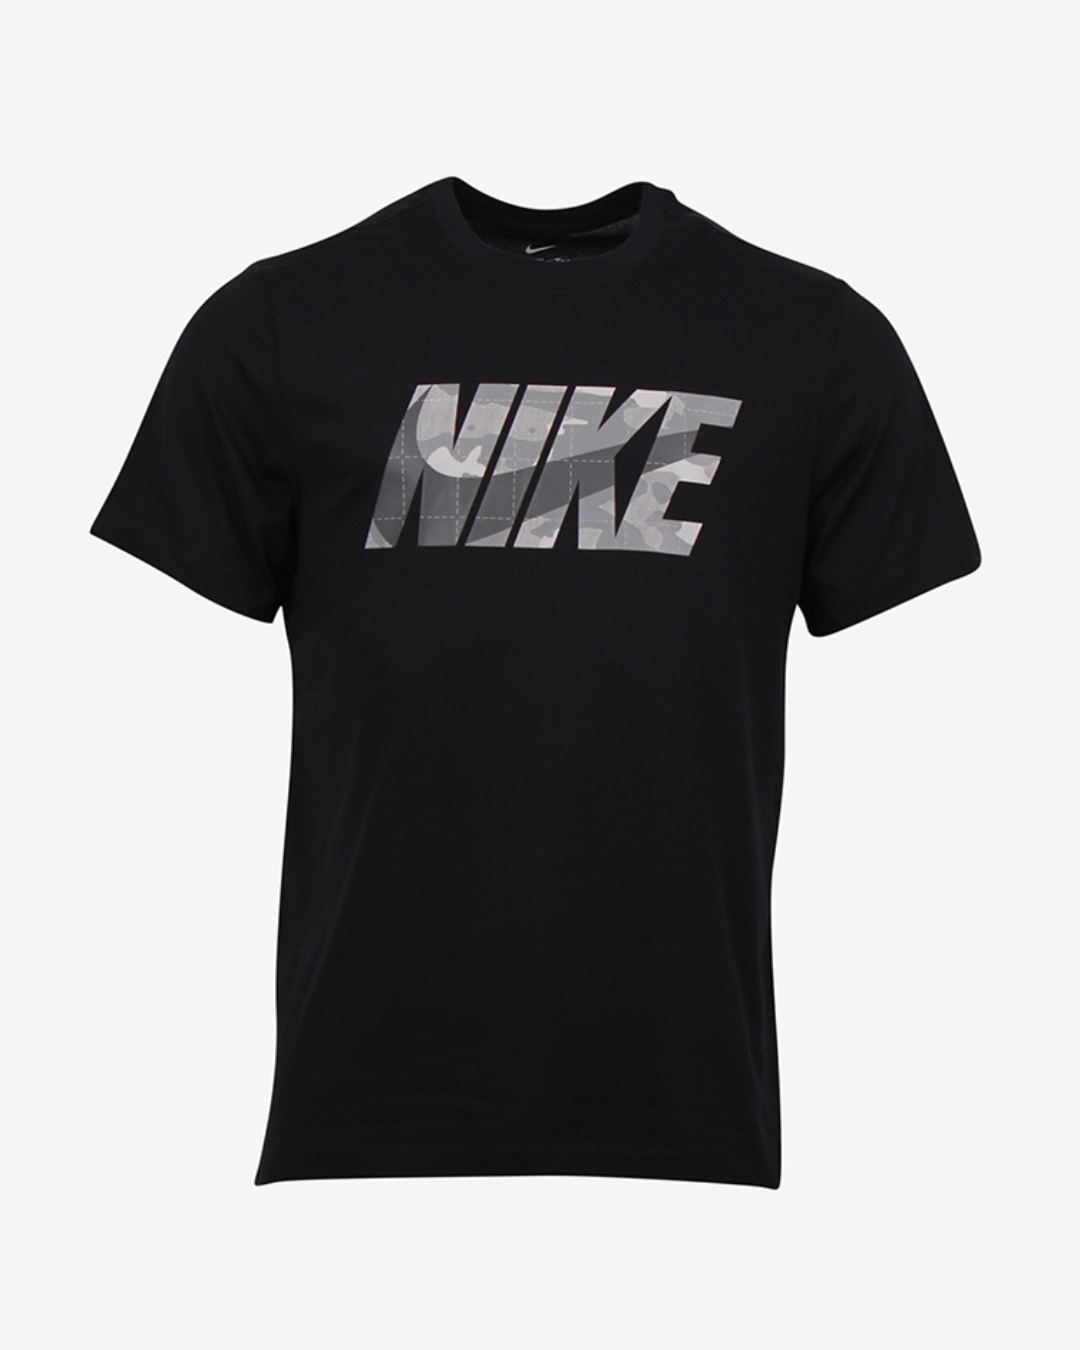 Nike Dri FIT camo t-shirt - Sort - Str. S - Modish.dk